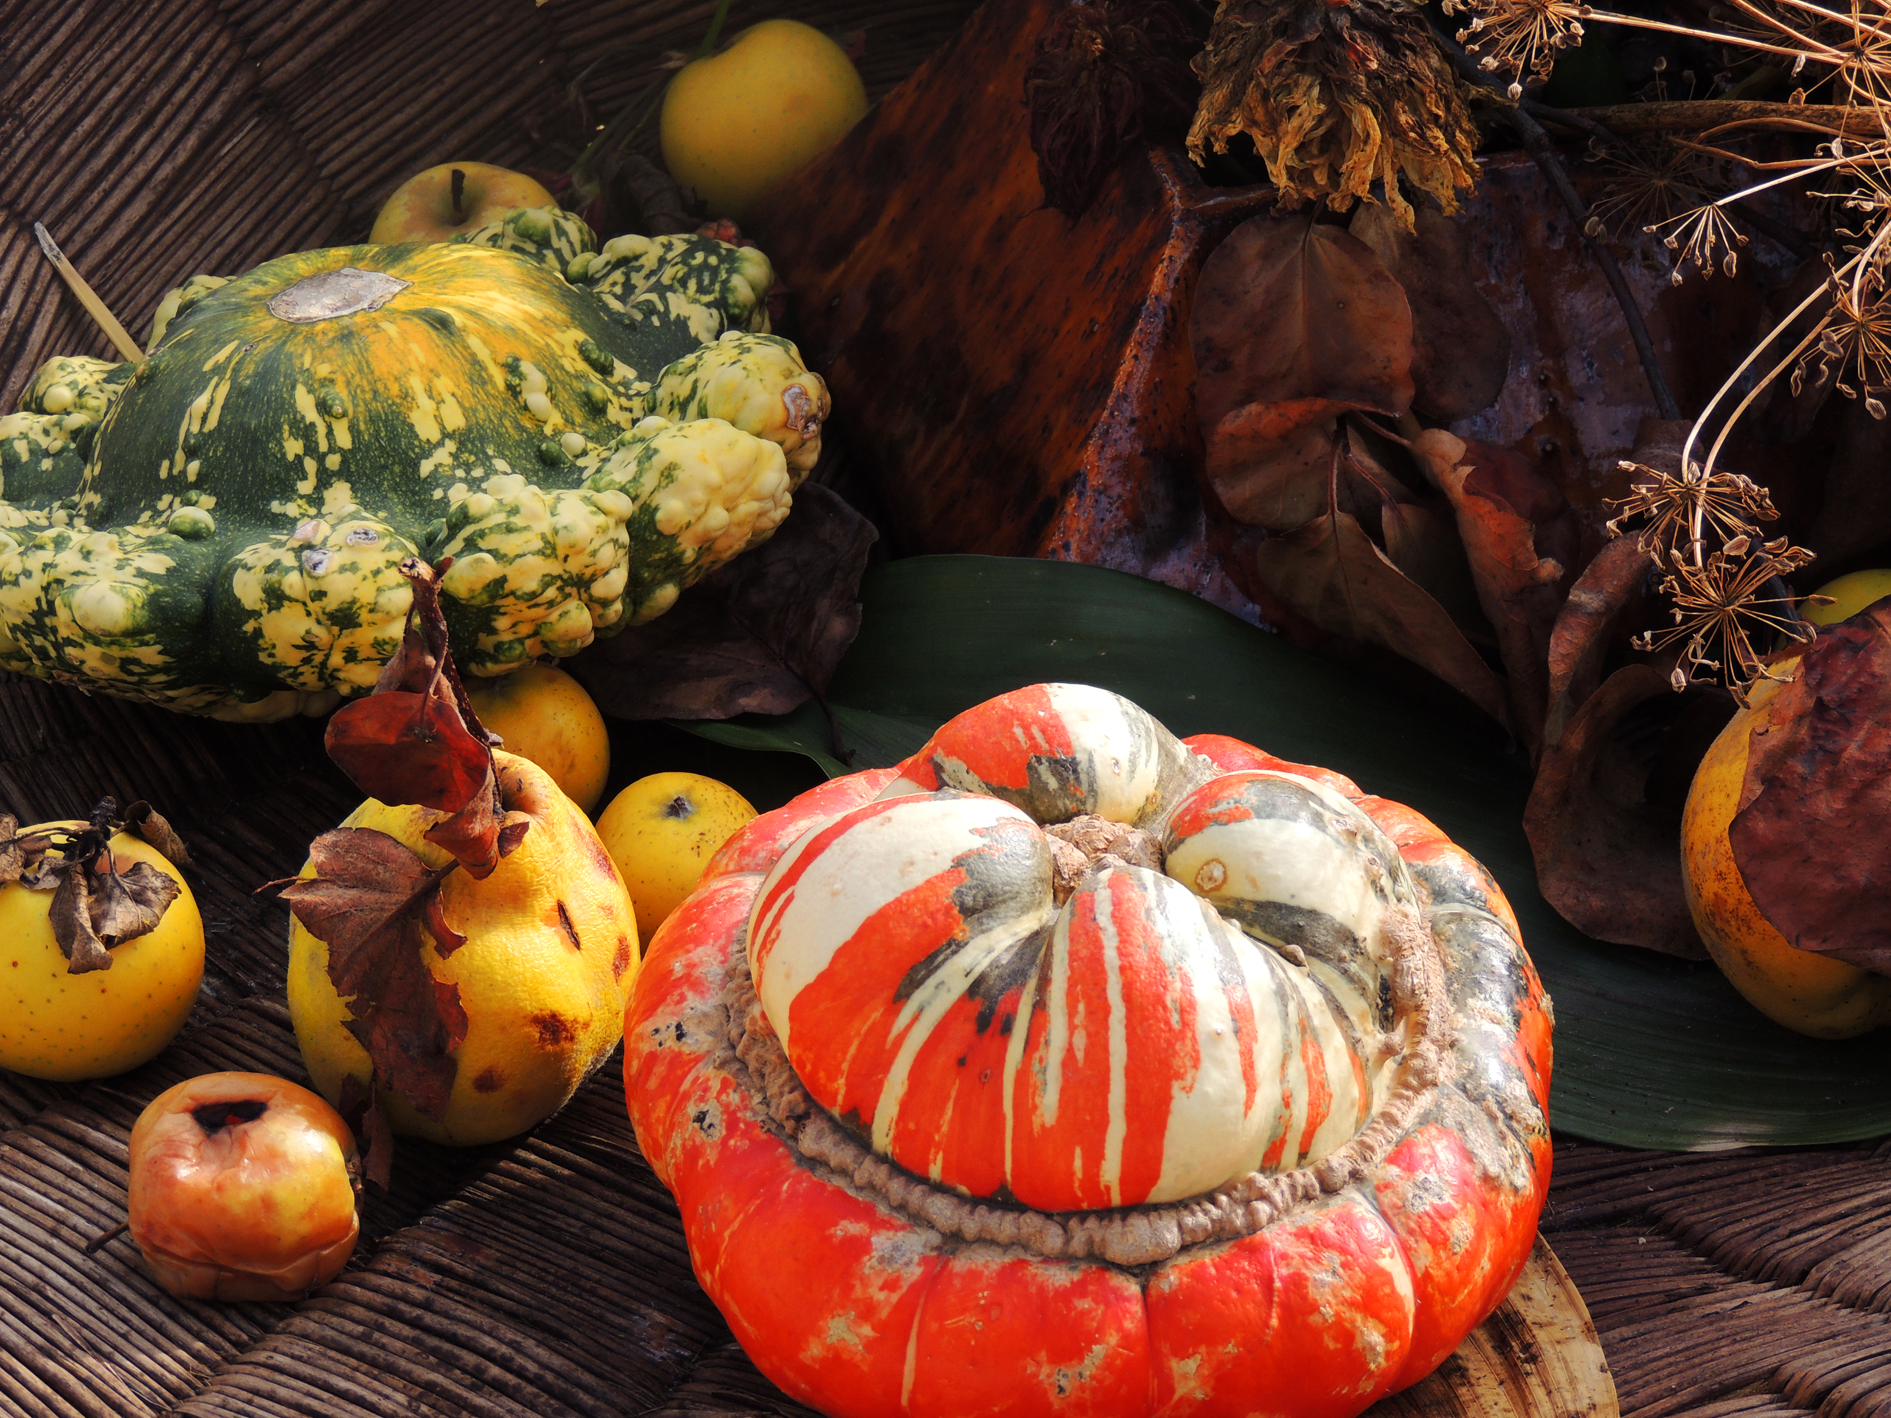 Скачать обои бесплатно Фрукты, Еда, Осень, Фрукты И Овощи картинка на рабочий стол ПК